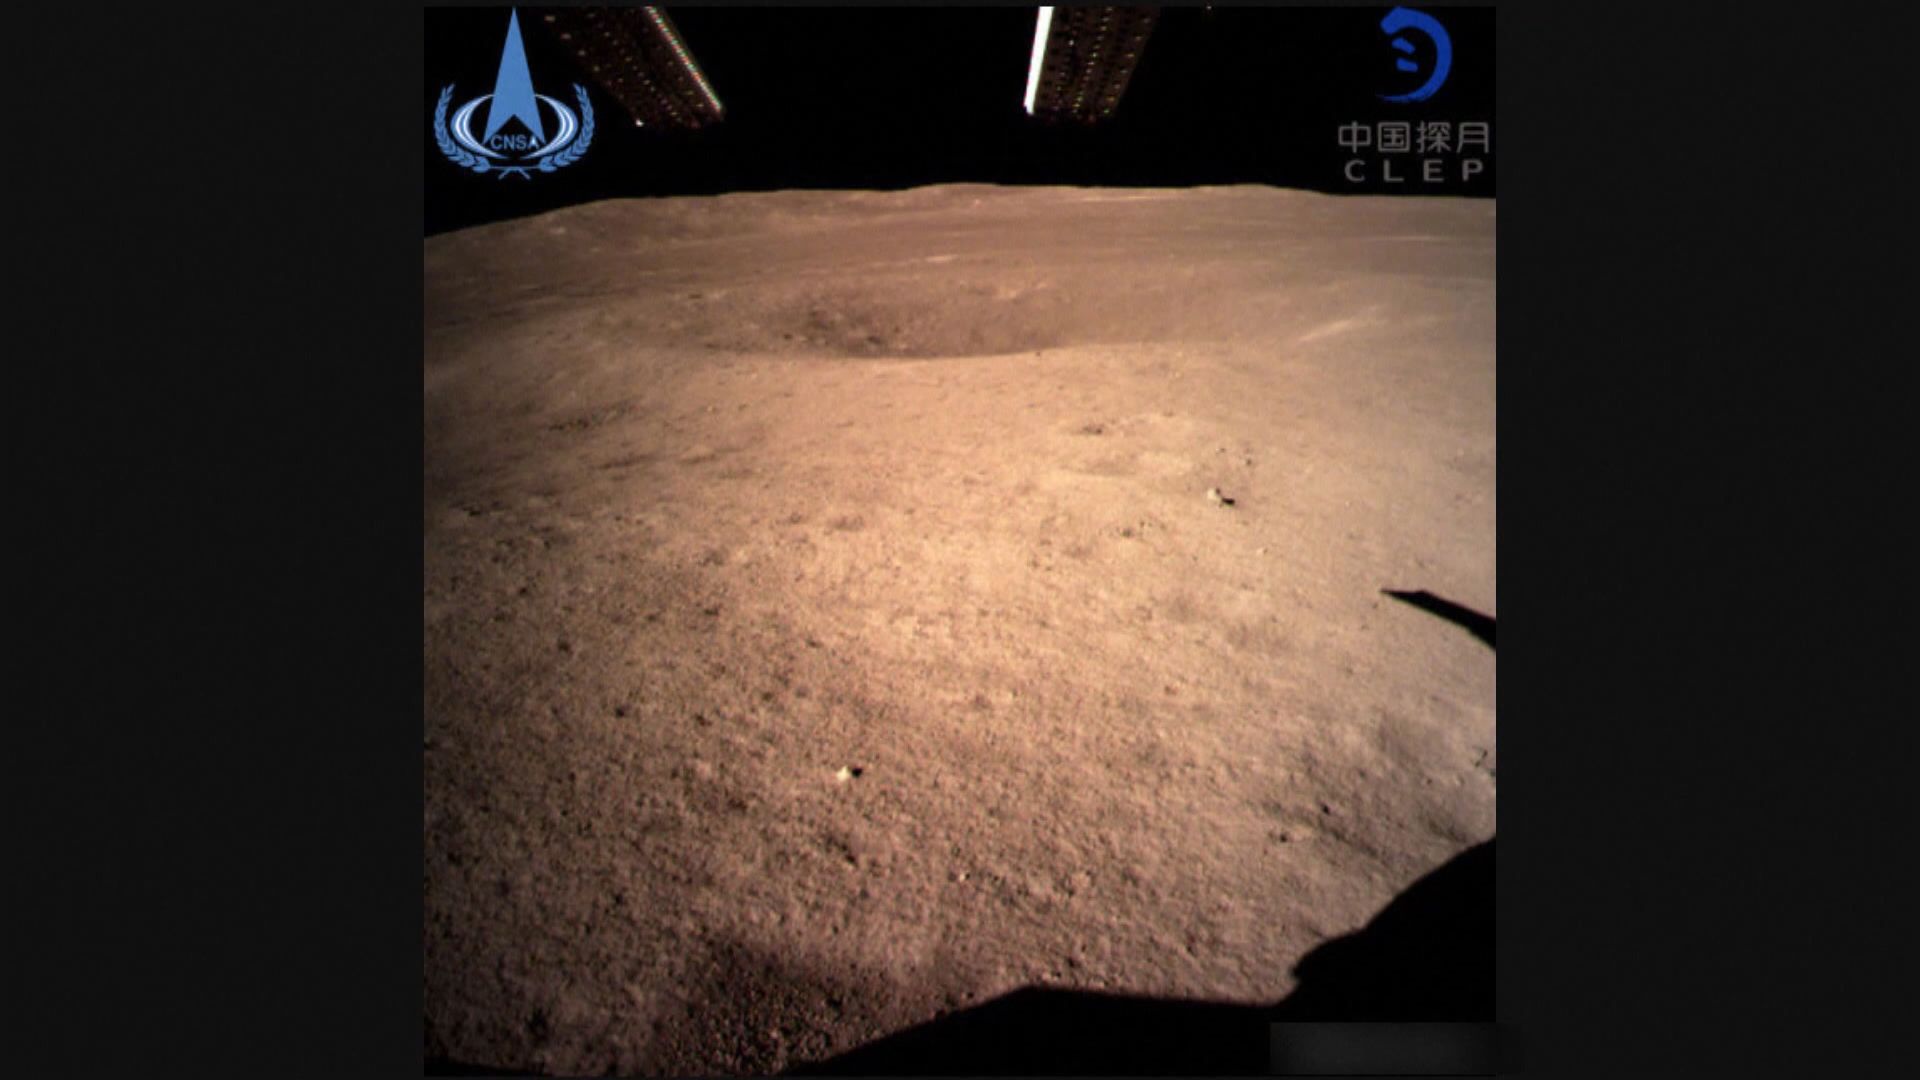 嫦娥四號在月球背面軟着陸並已傳回相片